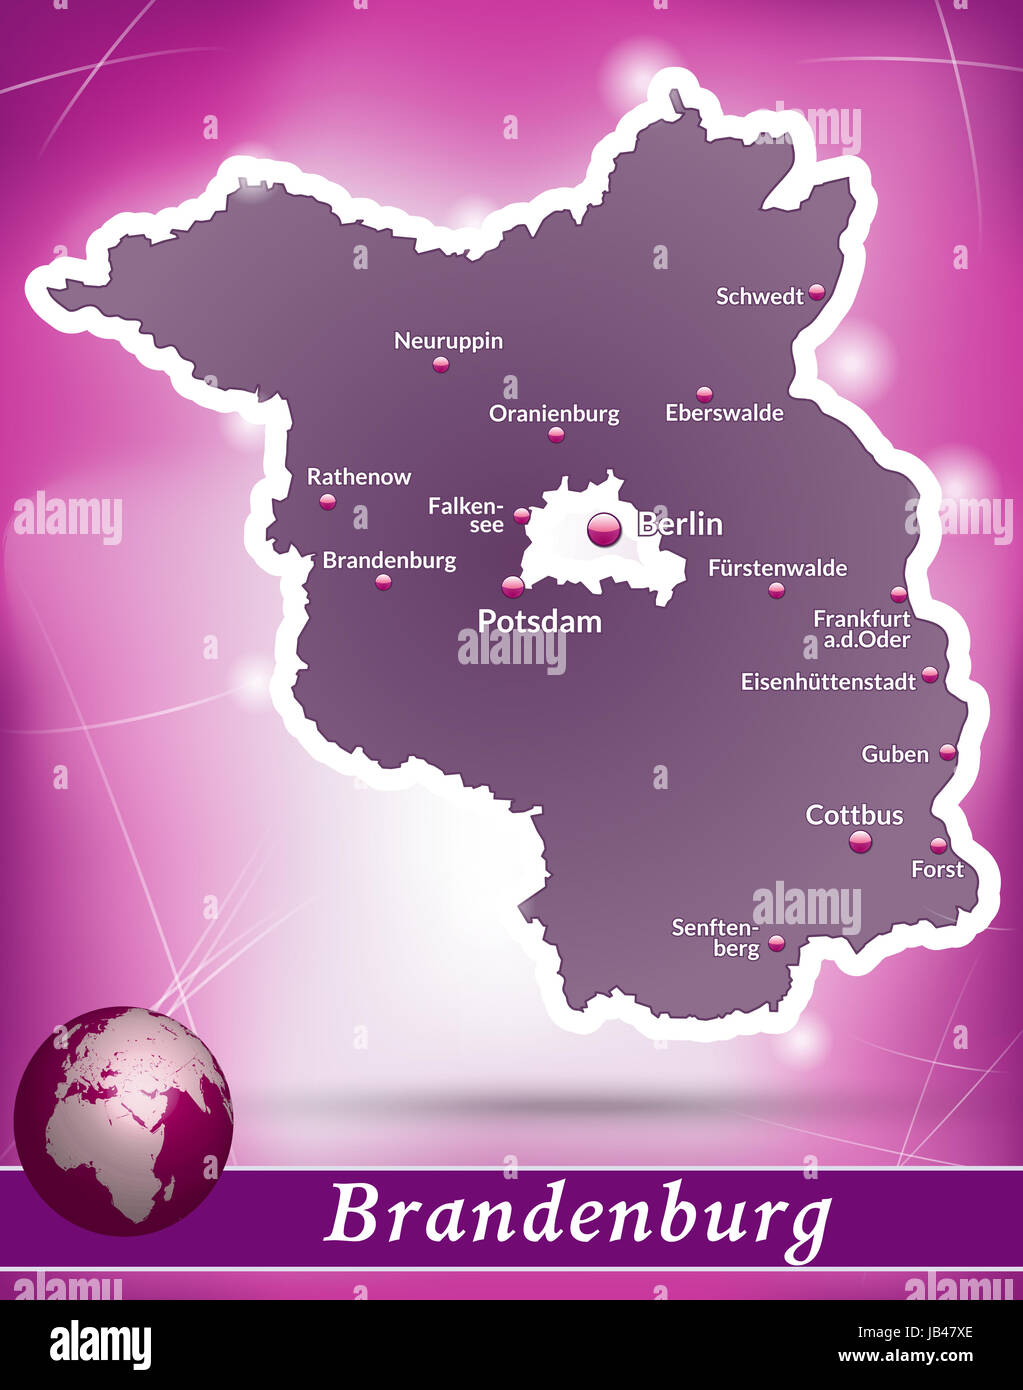 Brandeburgo in Deutschland als Inselkarte mit abstraktem Hintergrund in Violett. Durch die ansprechende Gestaltung fügt sich die Karte perfekt in Ihr Vorhaben ein. Foto Stock